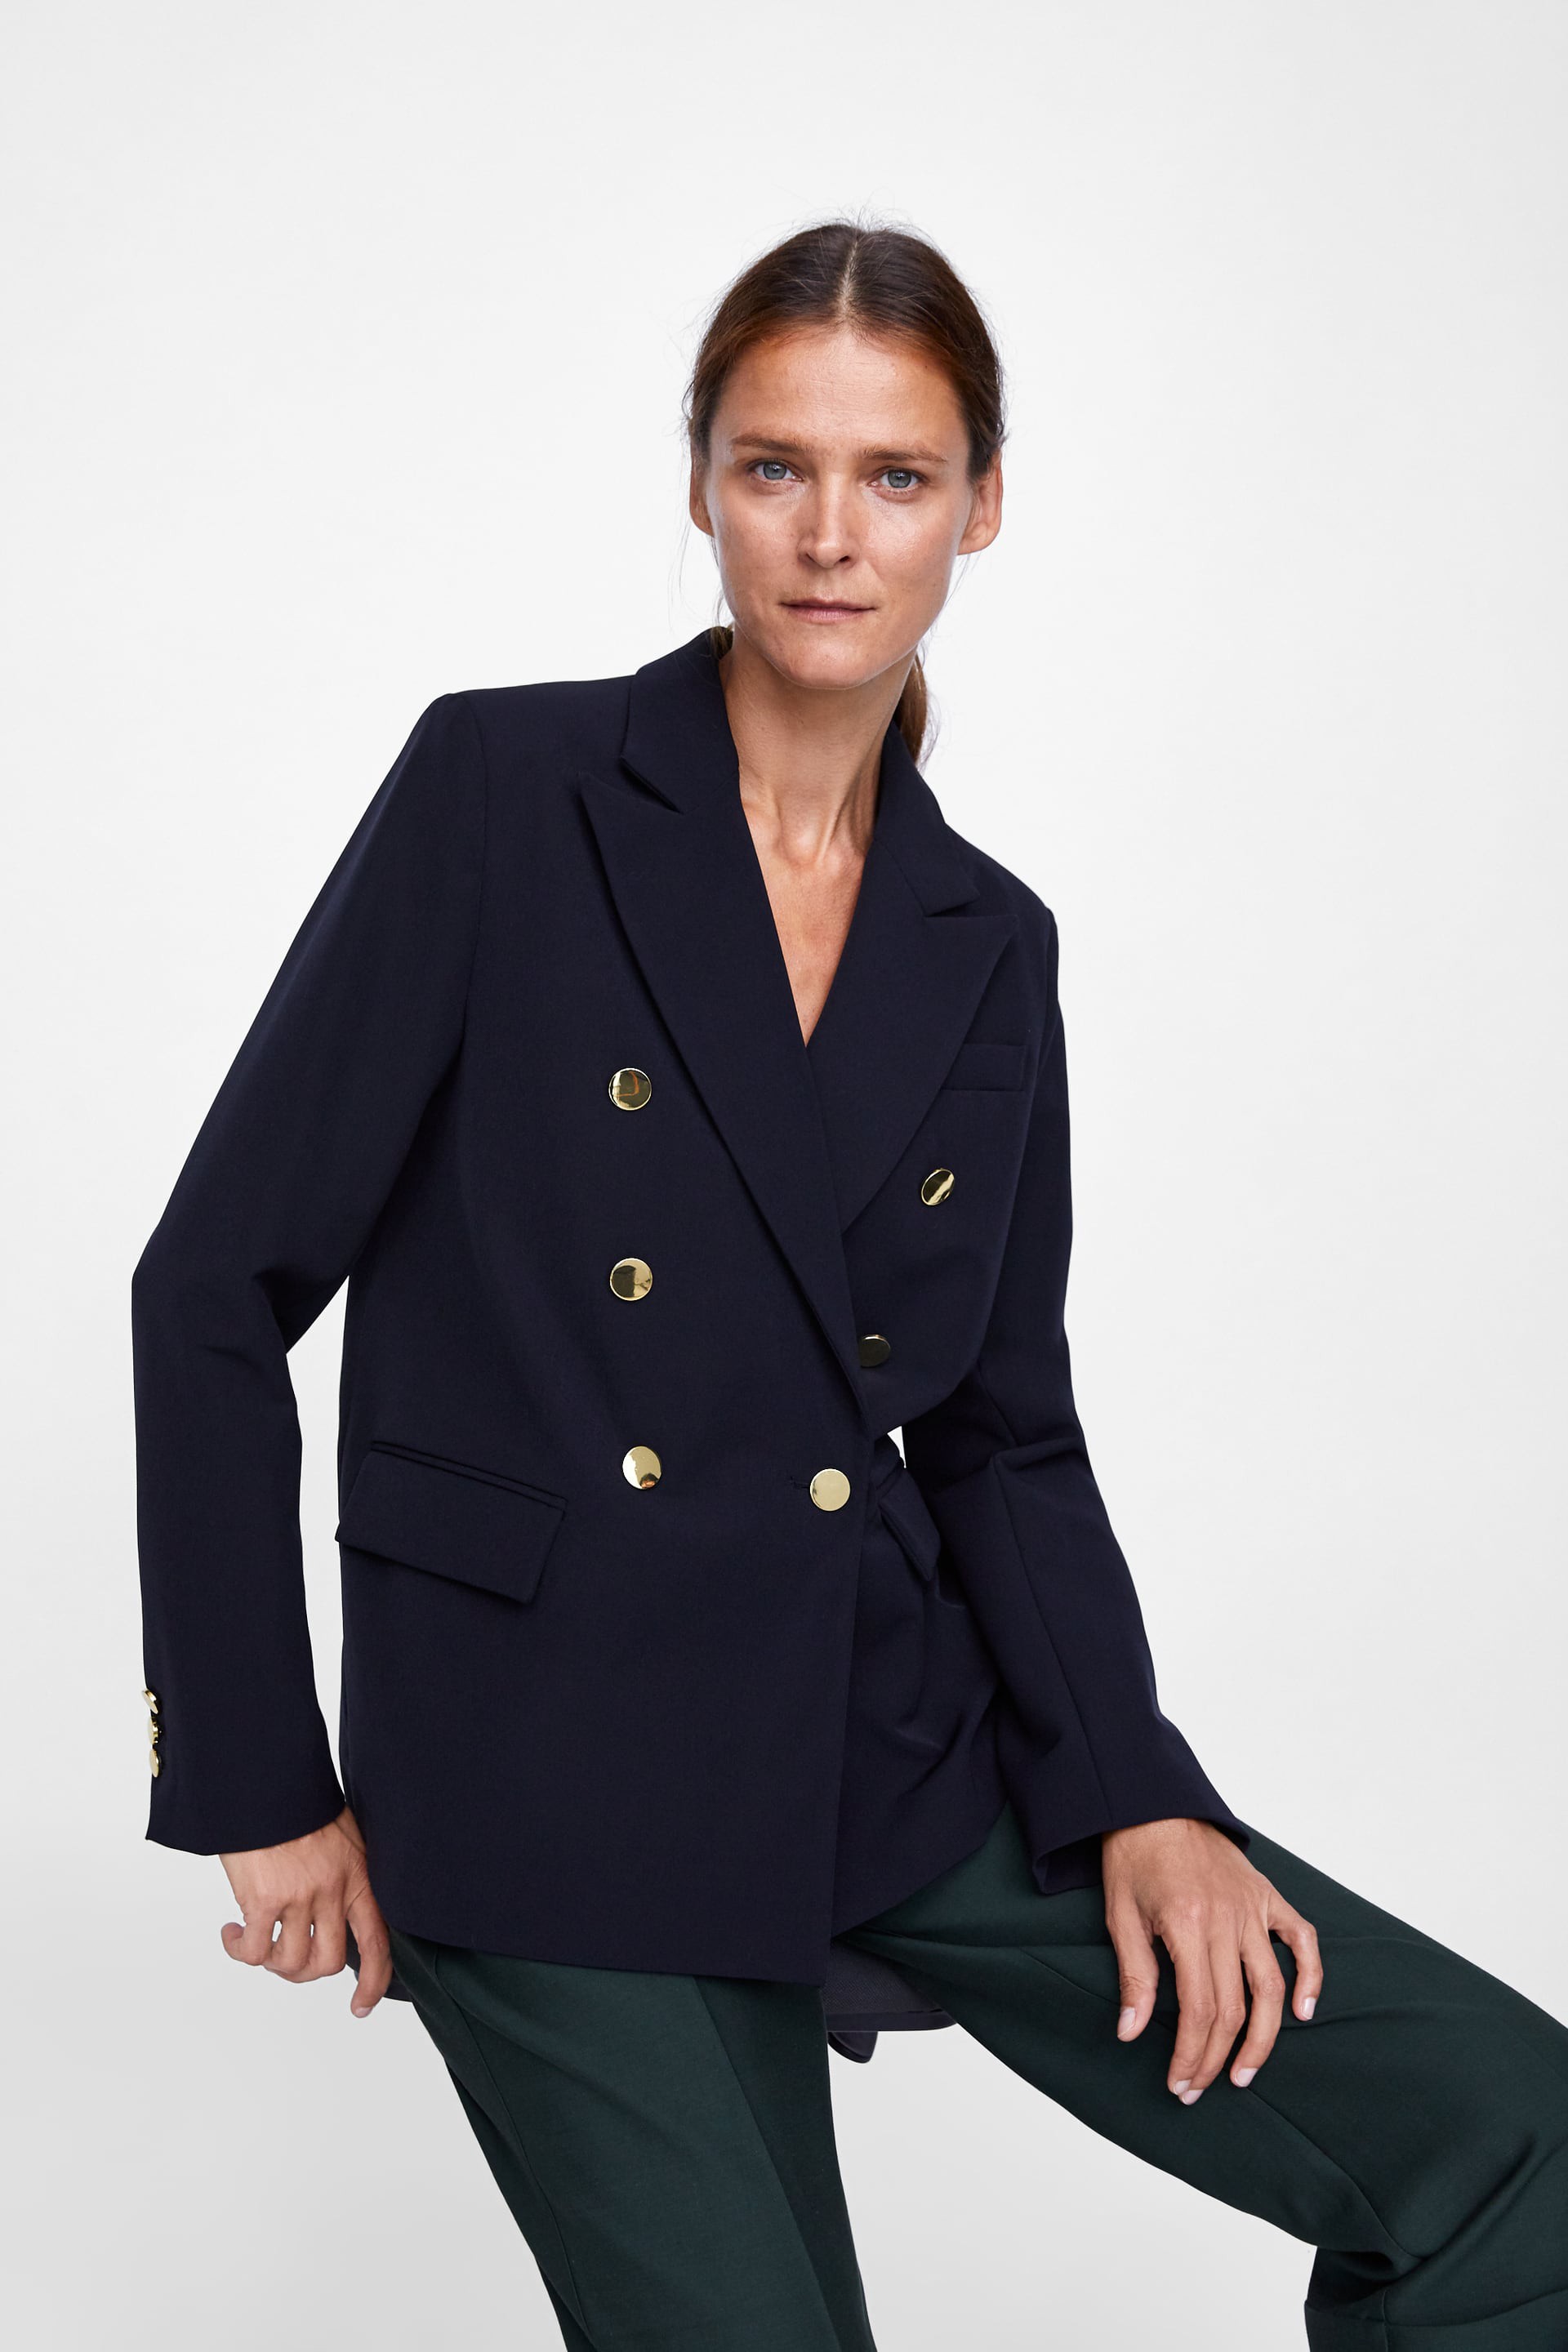 15 mẫu áo blazer của Zara, H&M... thanh lịch mà cực kỳ cá tính dành cho nàng công sở khi thời tiết đang chuyển từ hè sang thu - Ảnh 1.